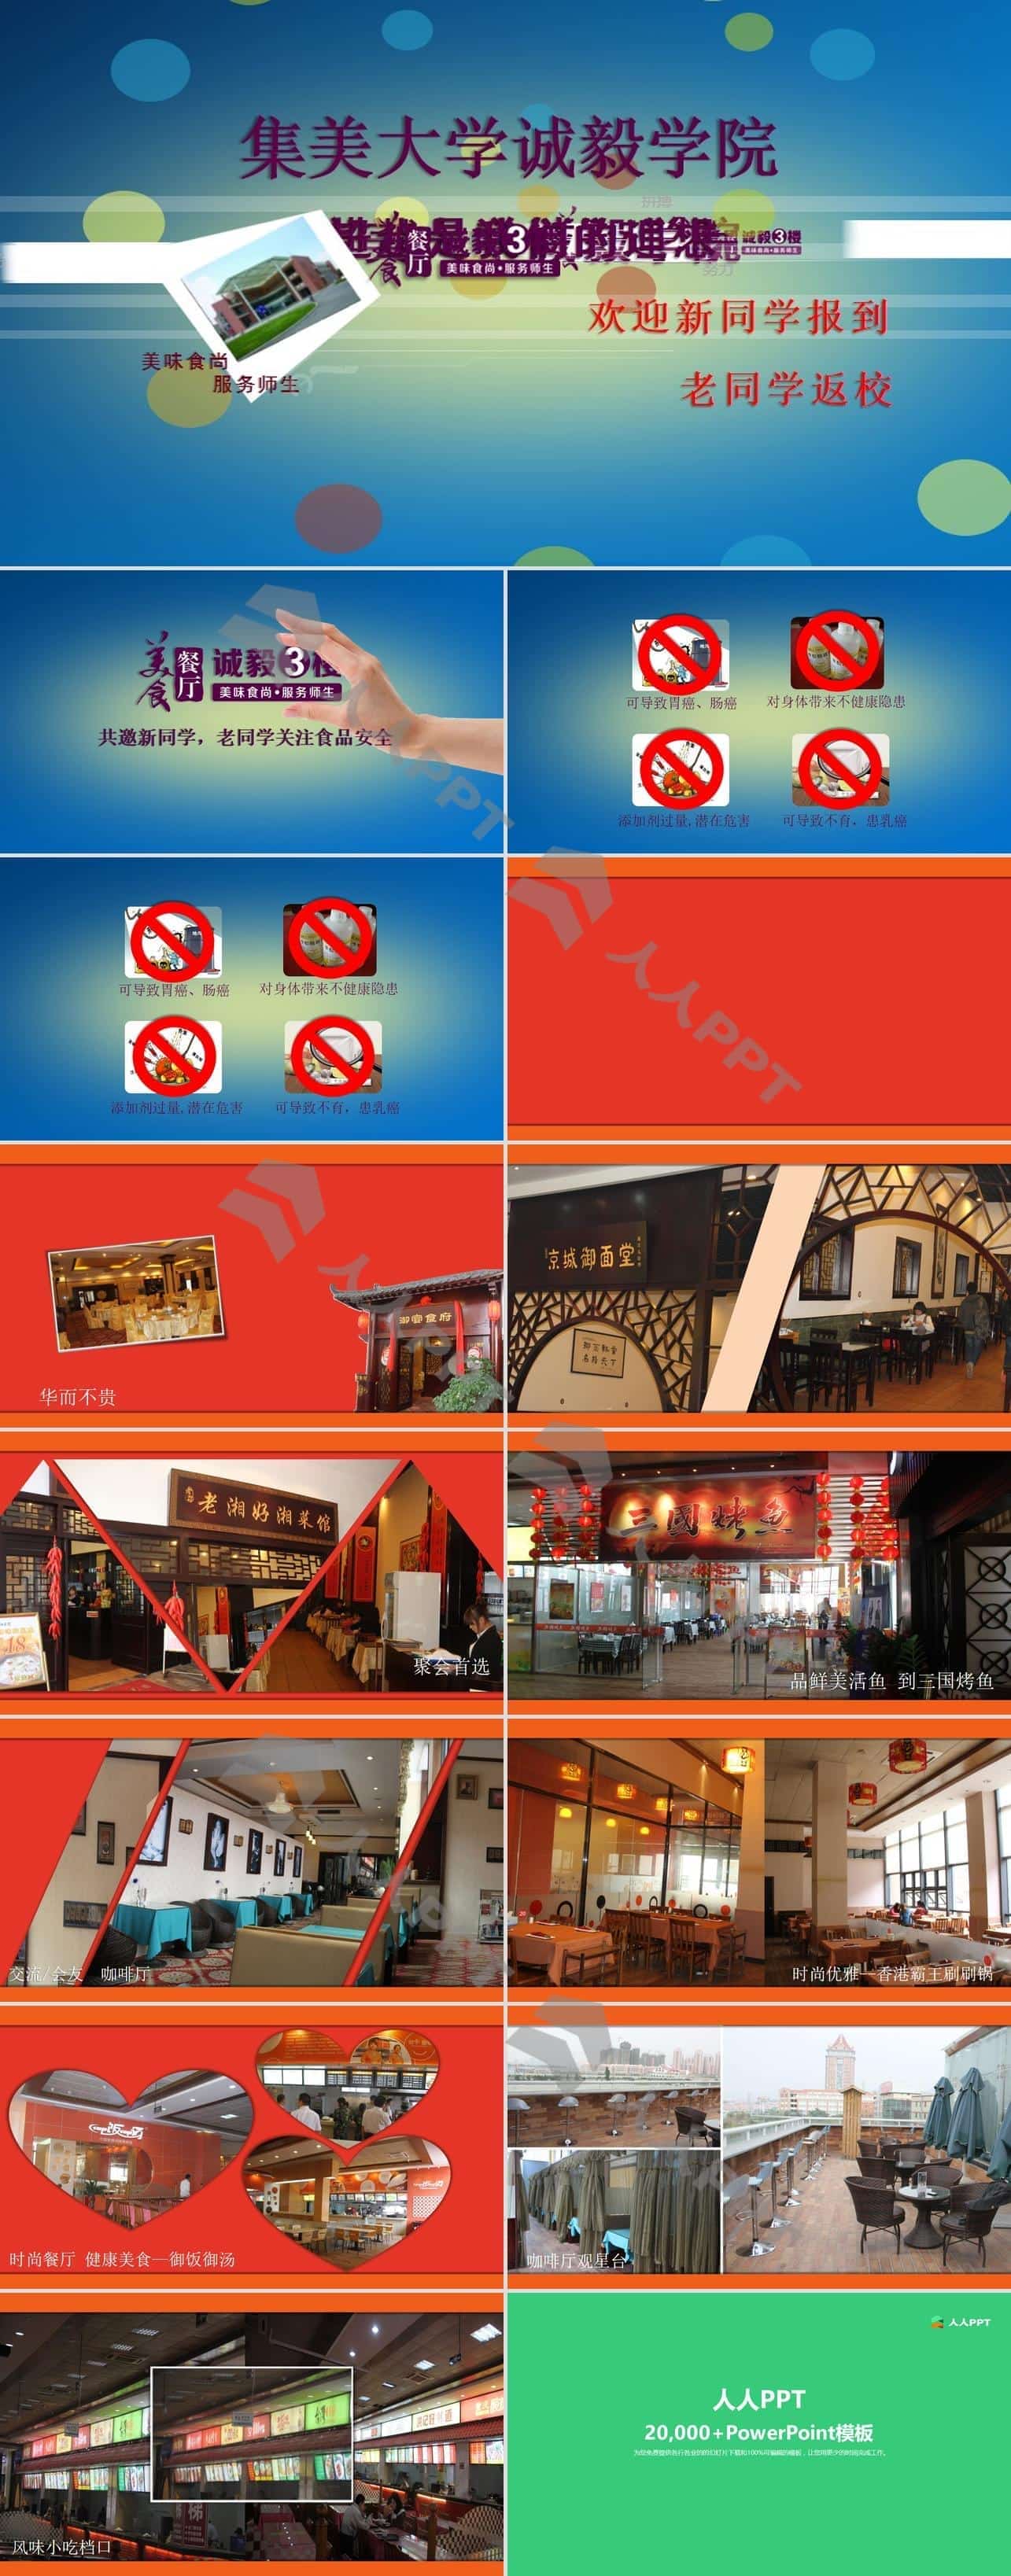 美食广场展示宣传片头动画PPT模板长图